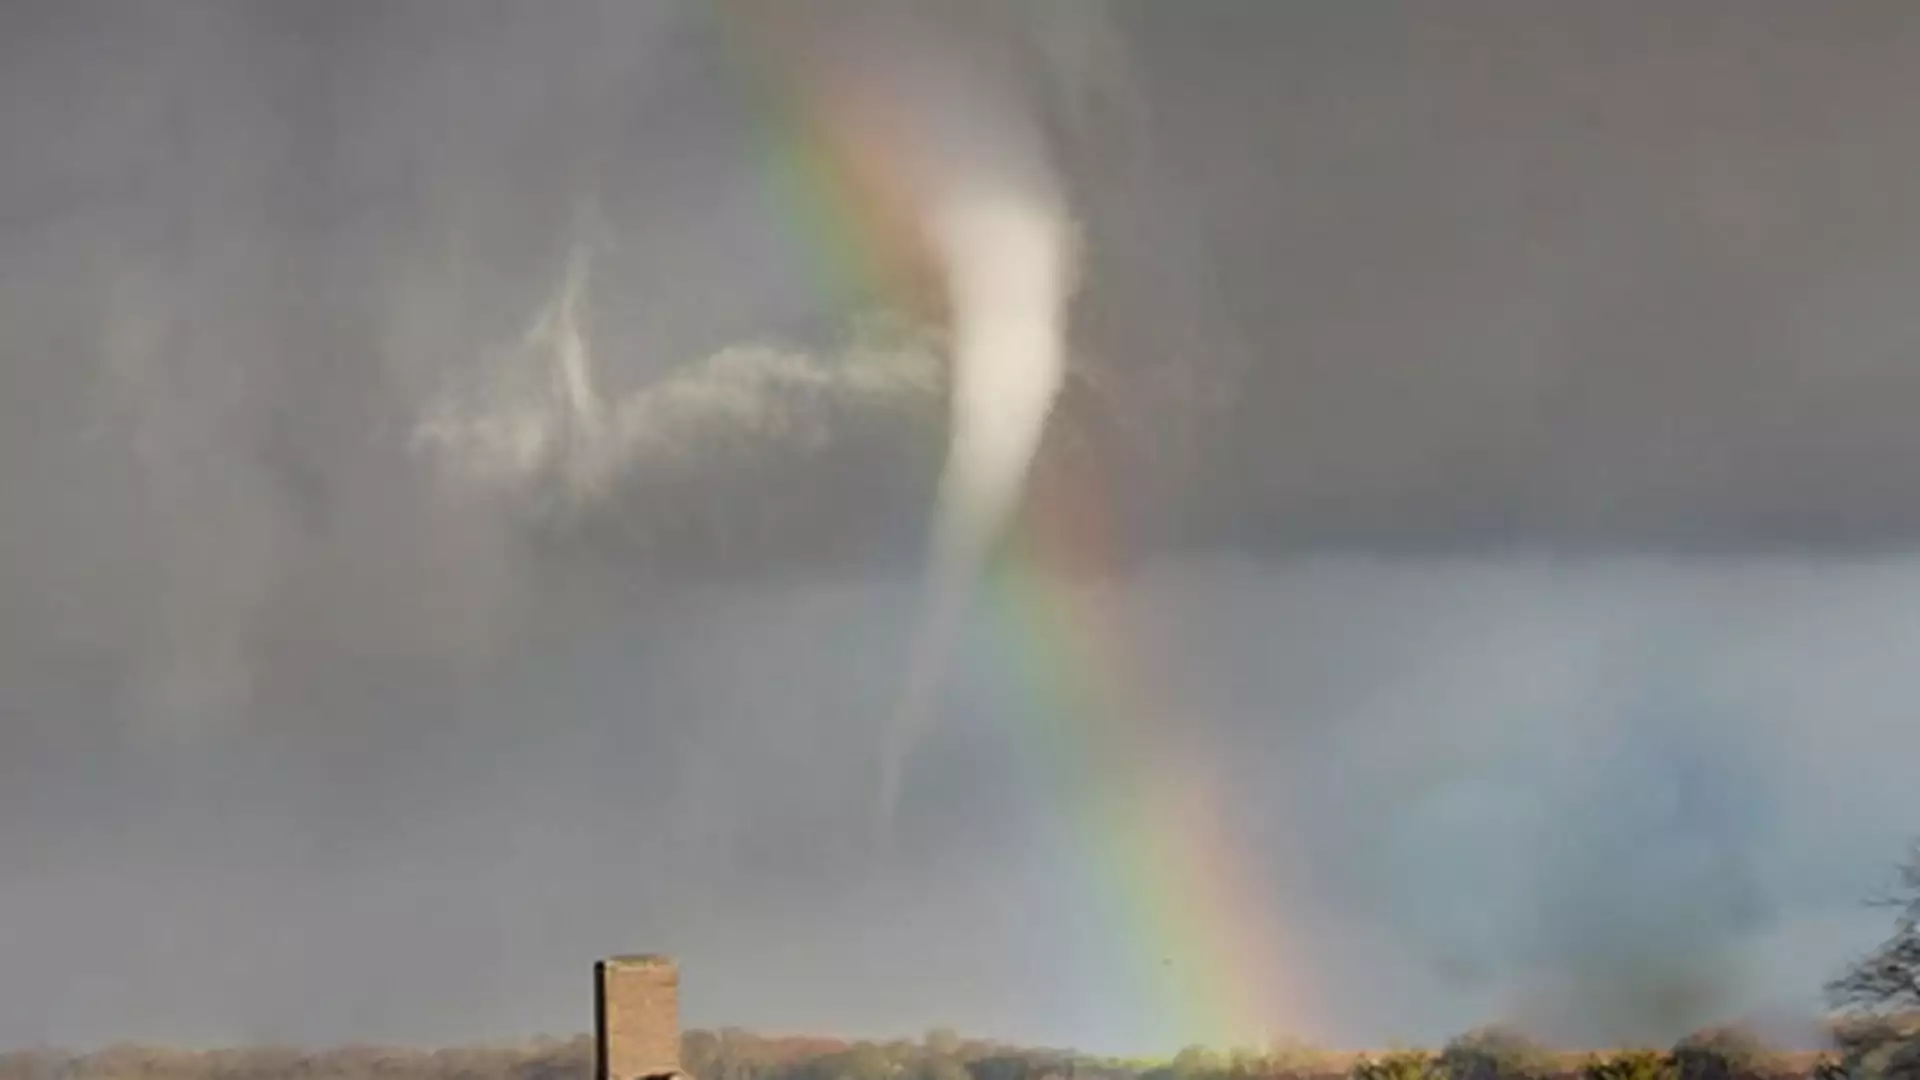 Zobacz zdjęcie szczęśliwca, który uchwycił tornado i tęczę na jednej fotce